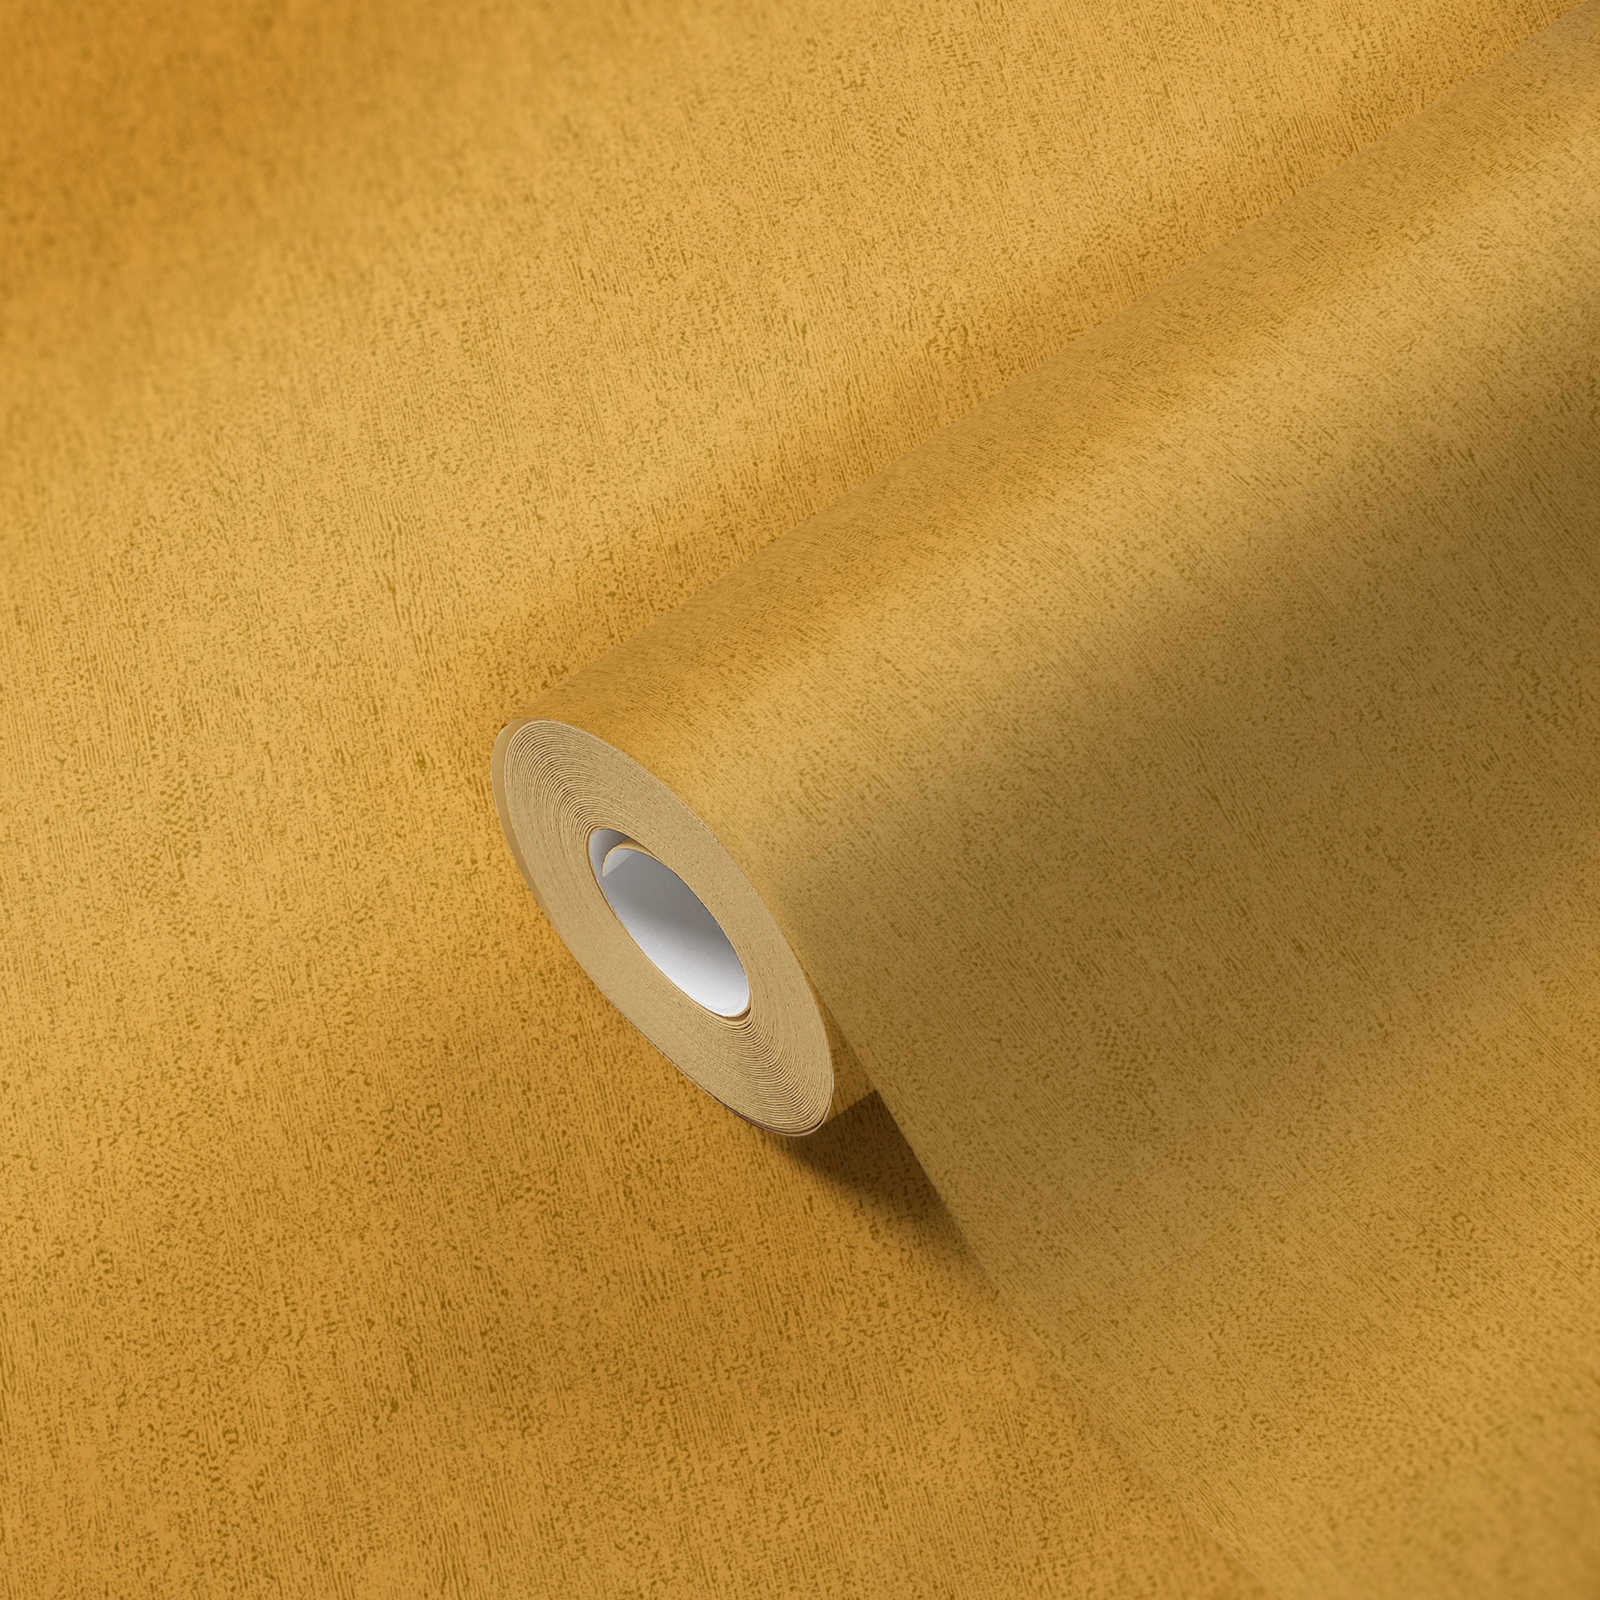             Papier peint uni avec structure aspect mat & lisse - jaune
        